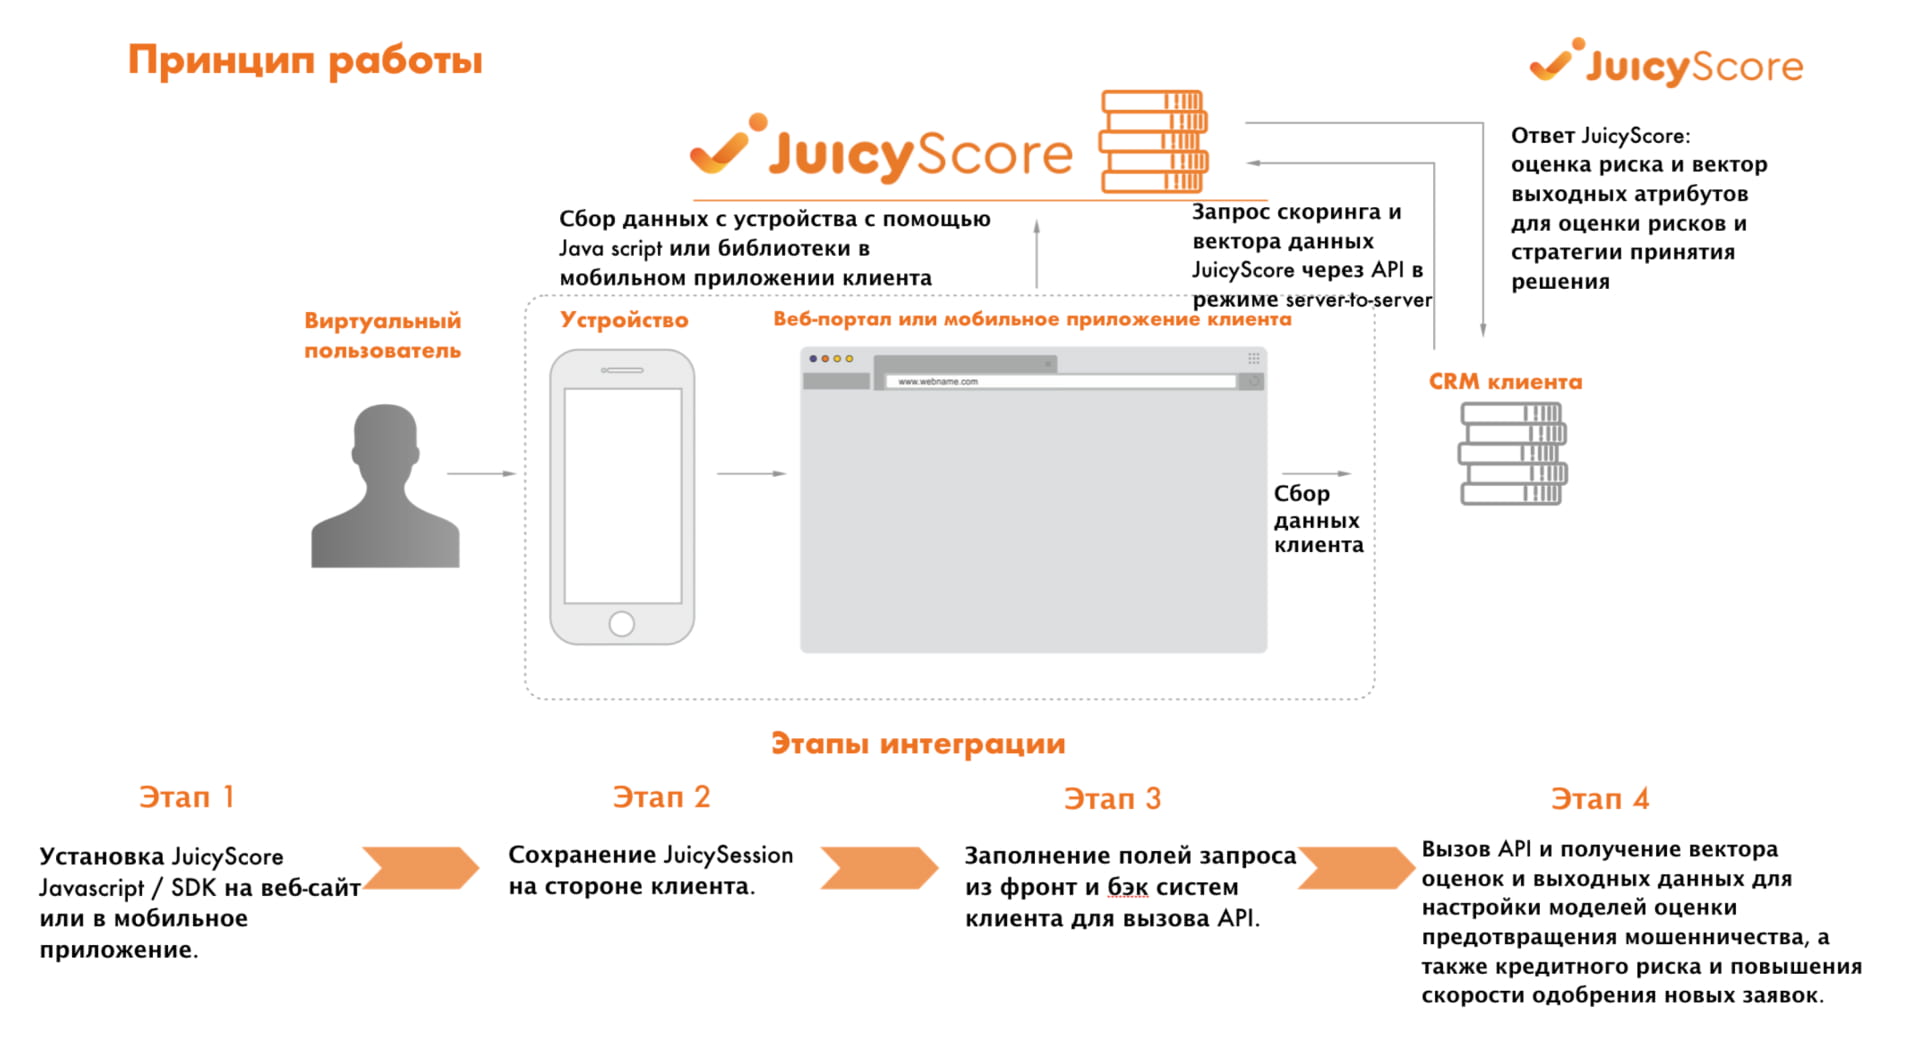 Схема работы антифрод-системы JuicyScore